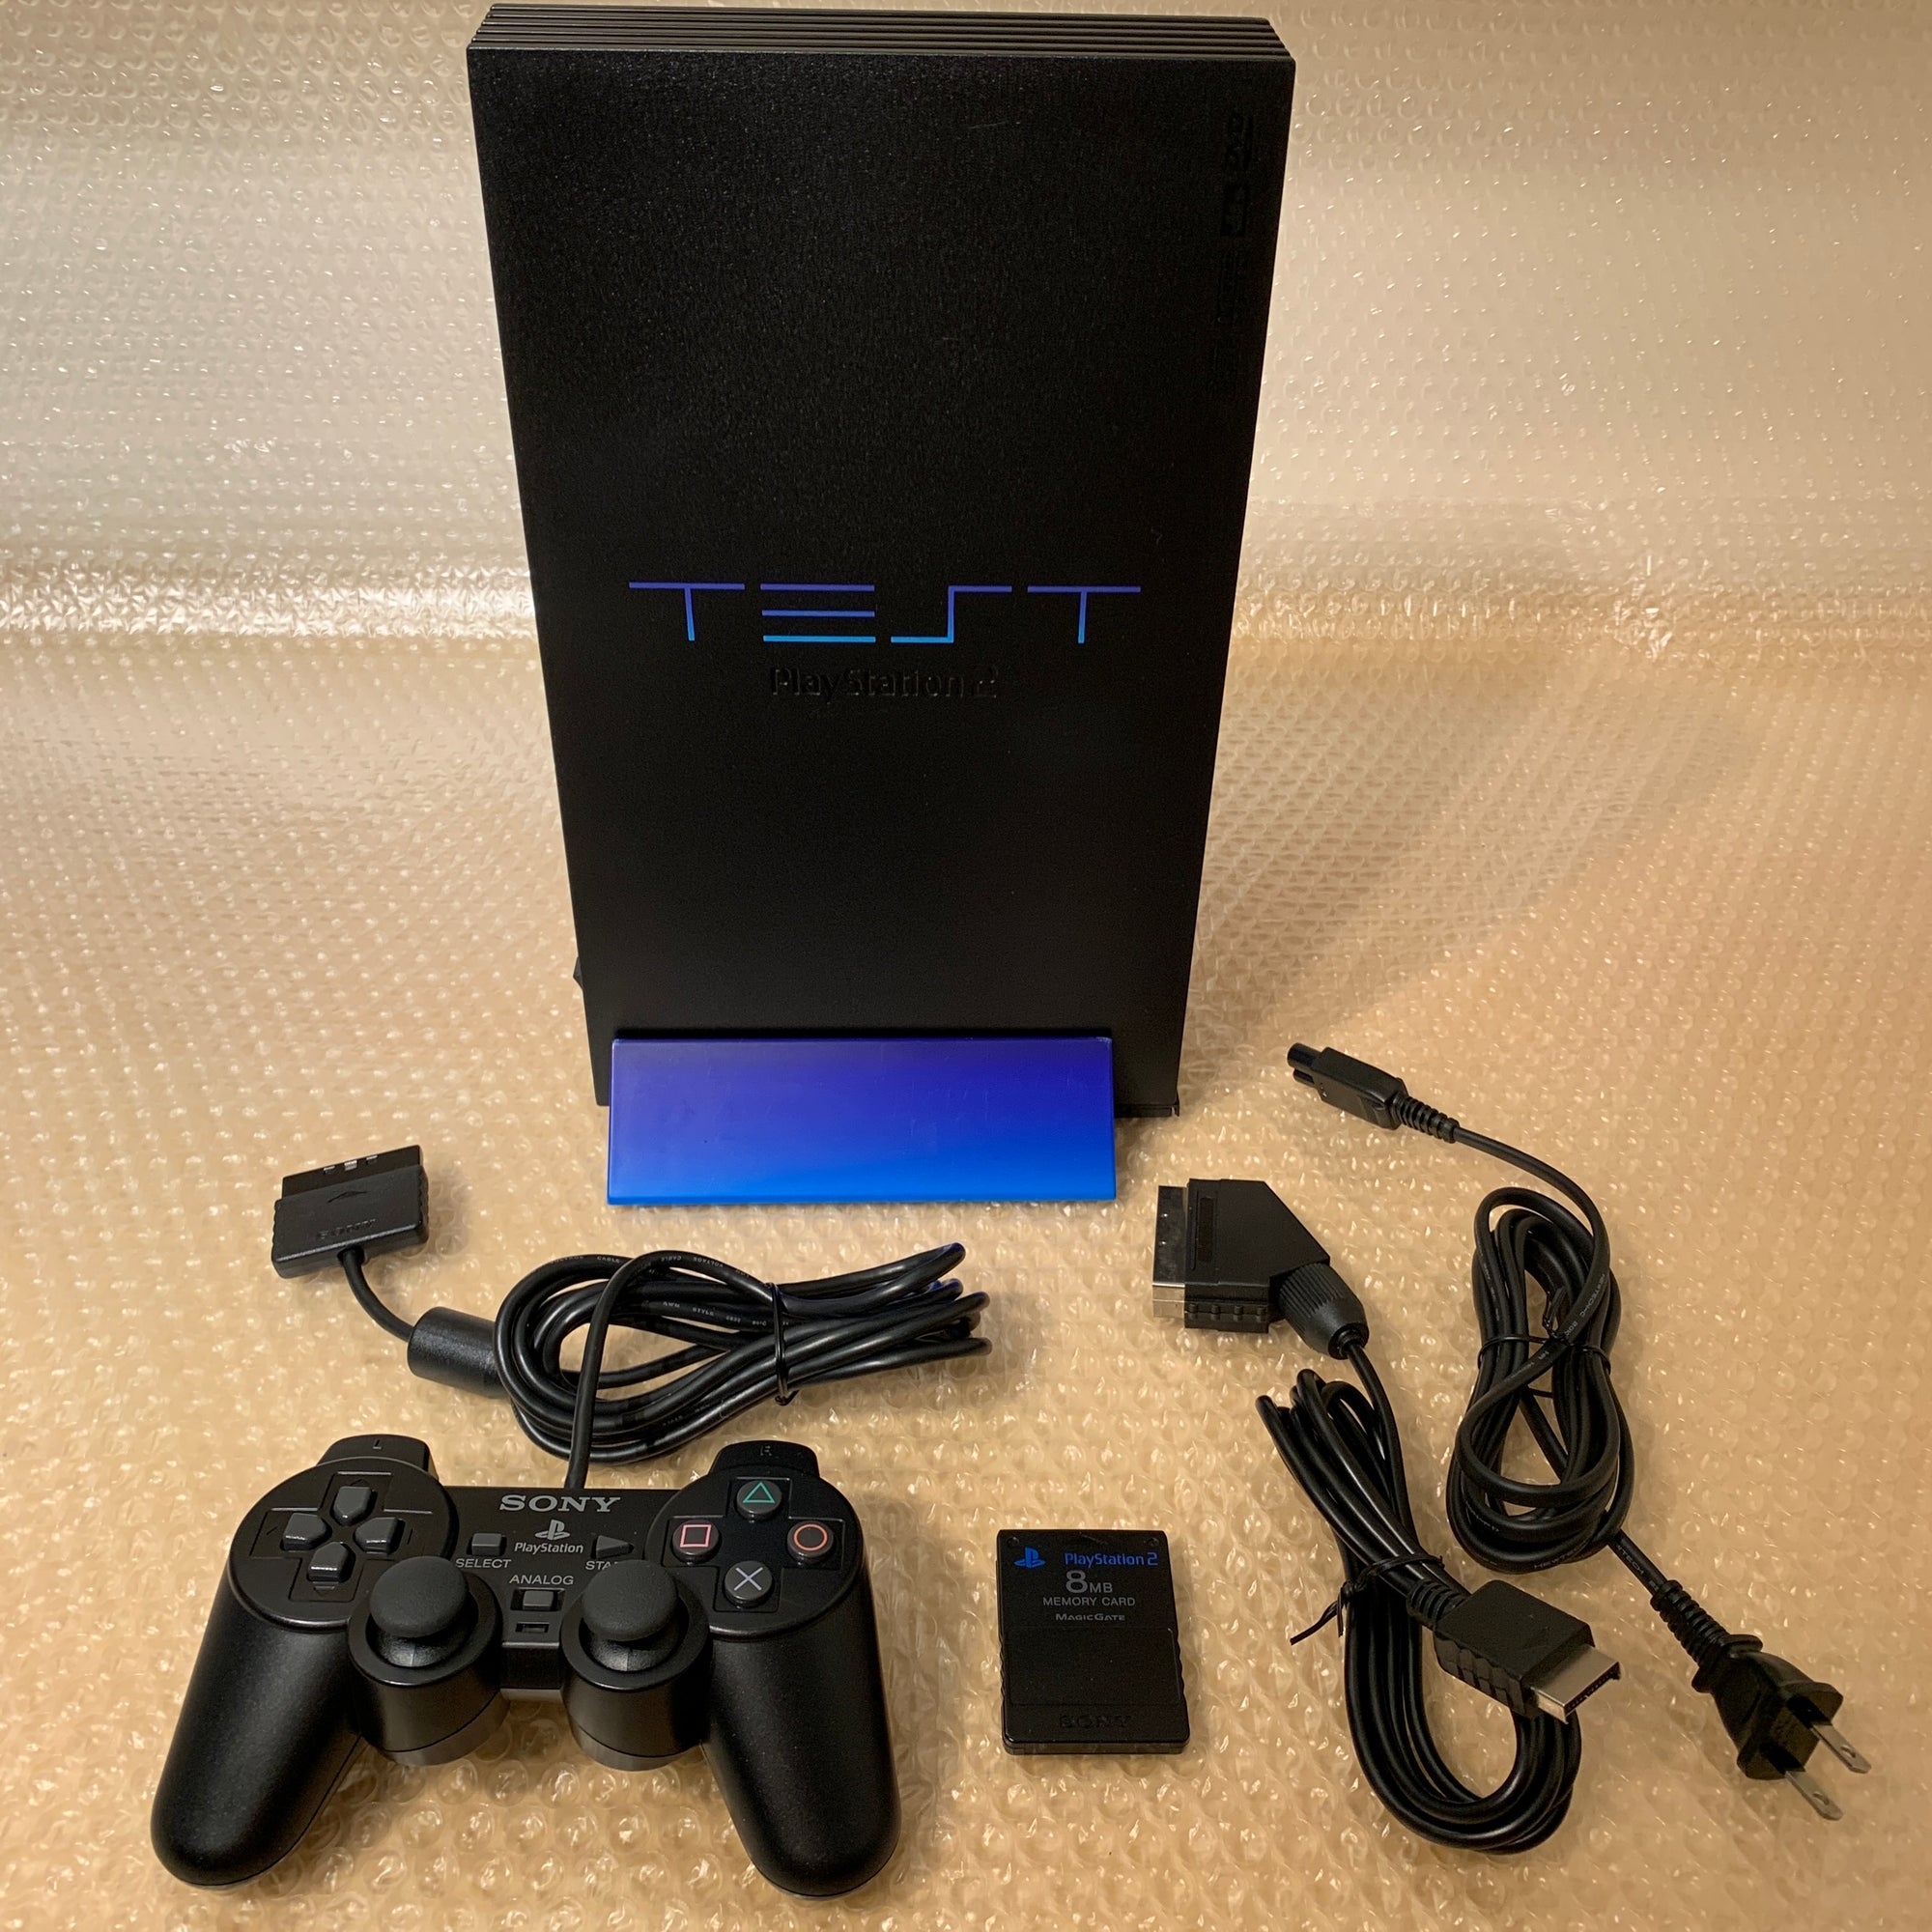 TEST PS2 (Debugging Station DTL-H30000) set